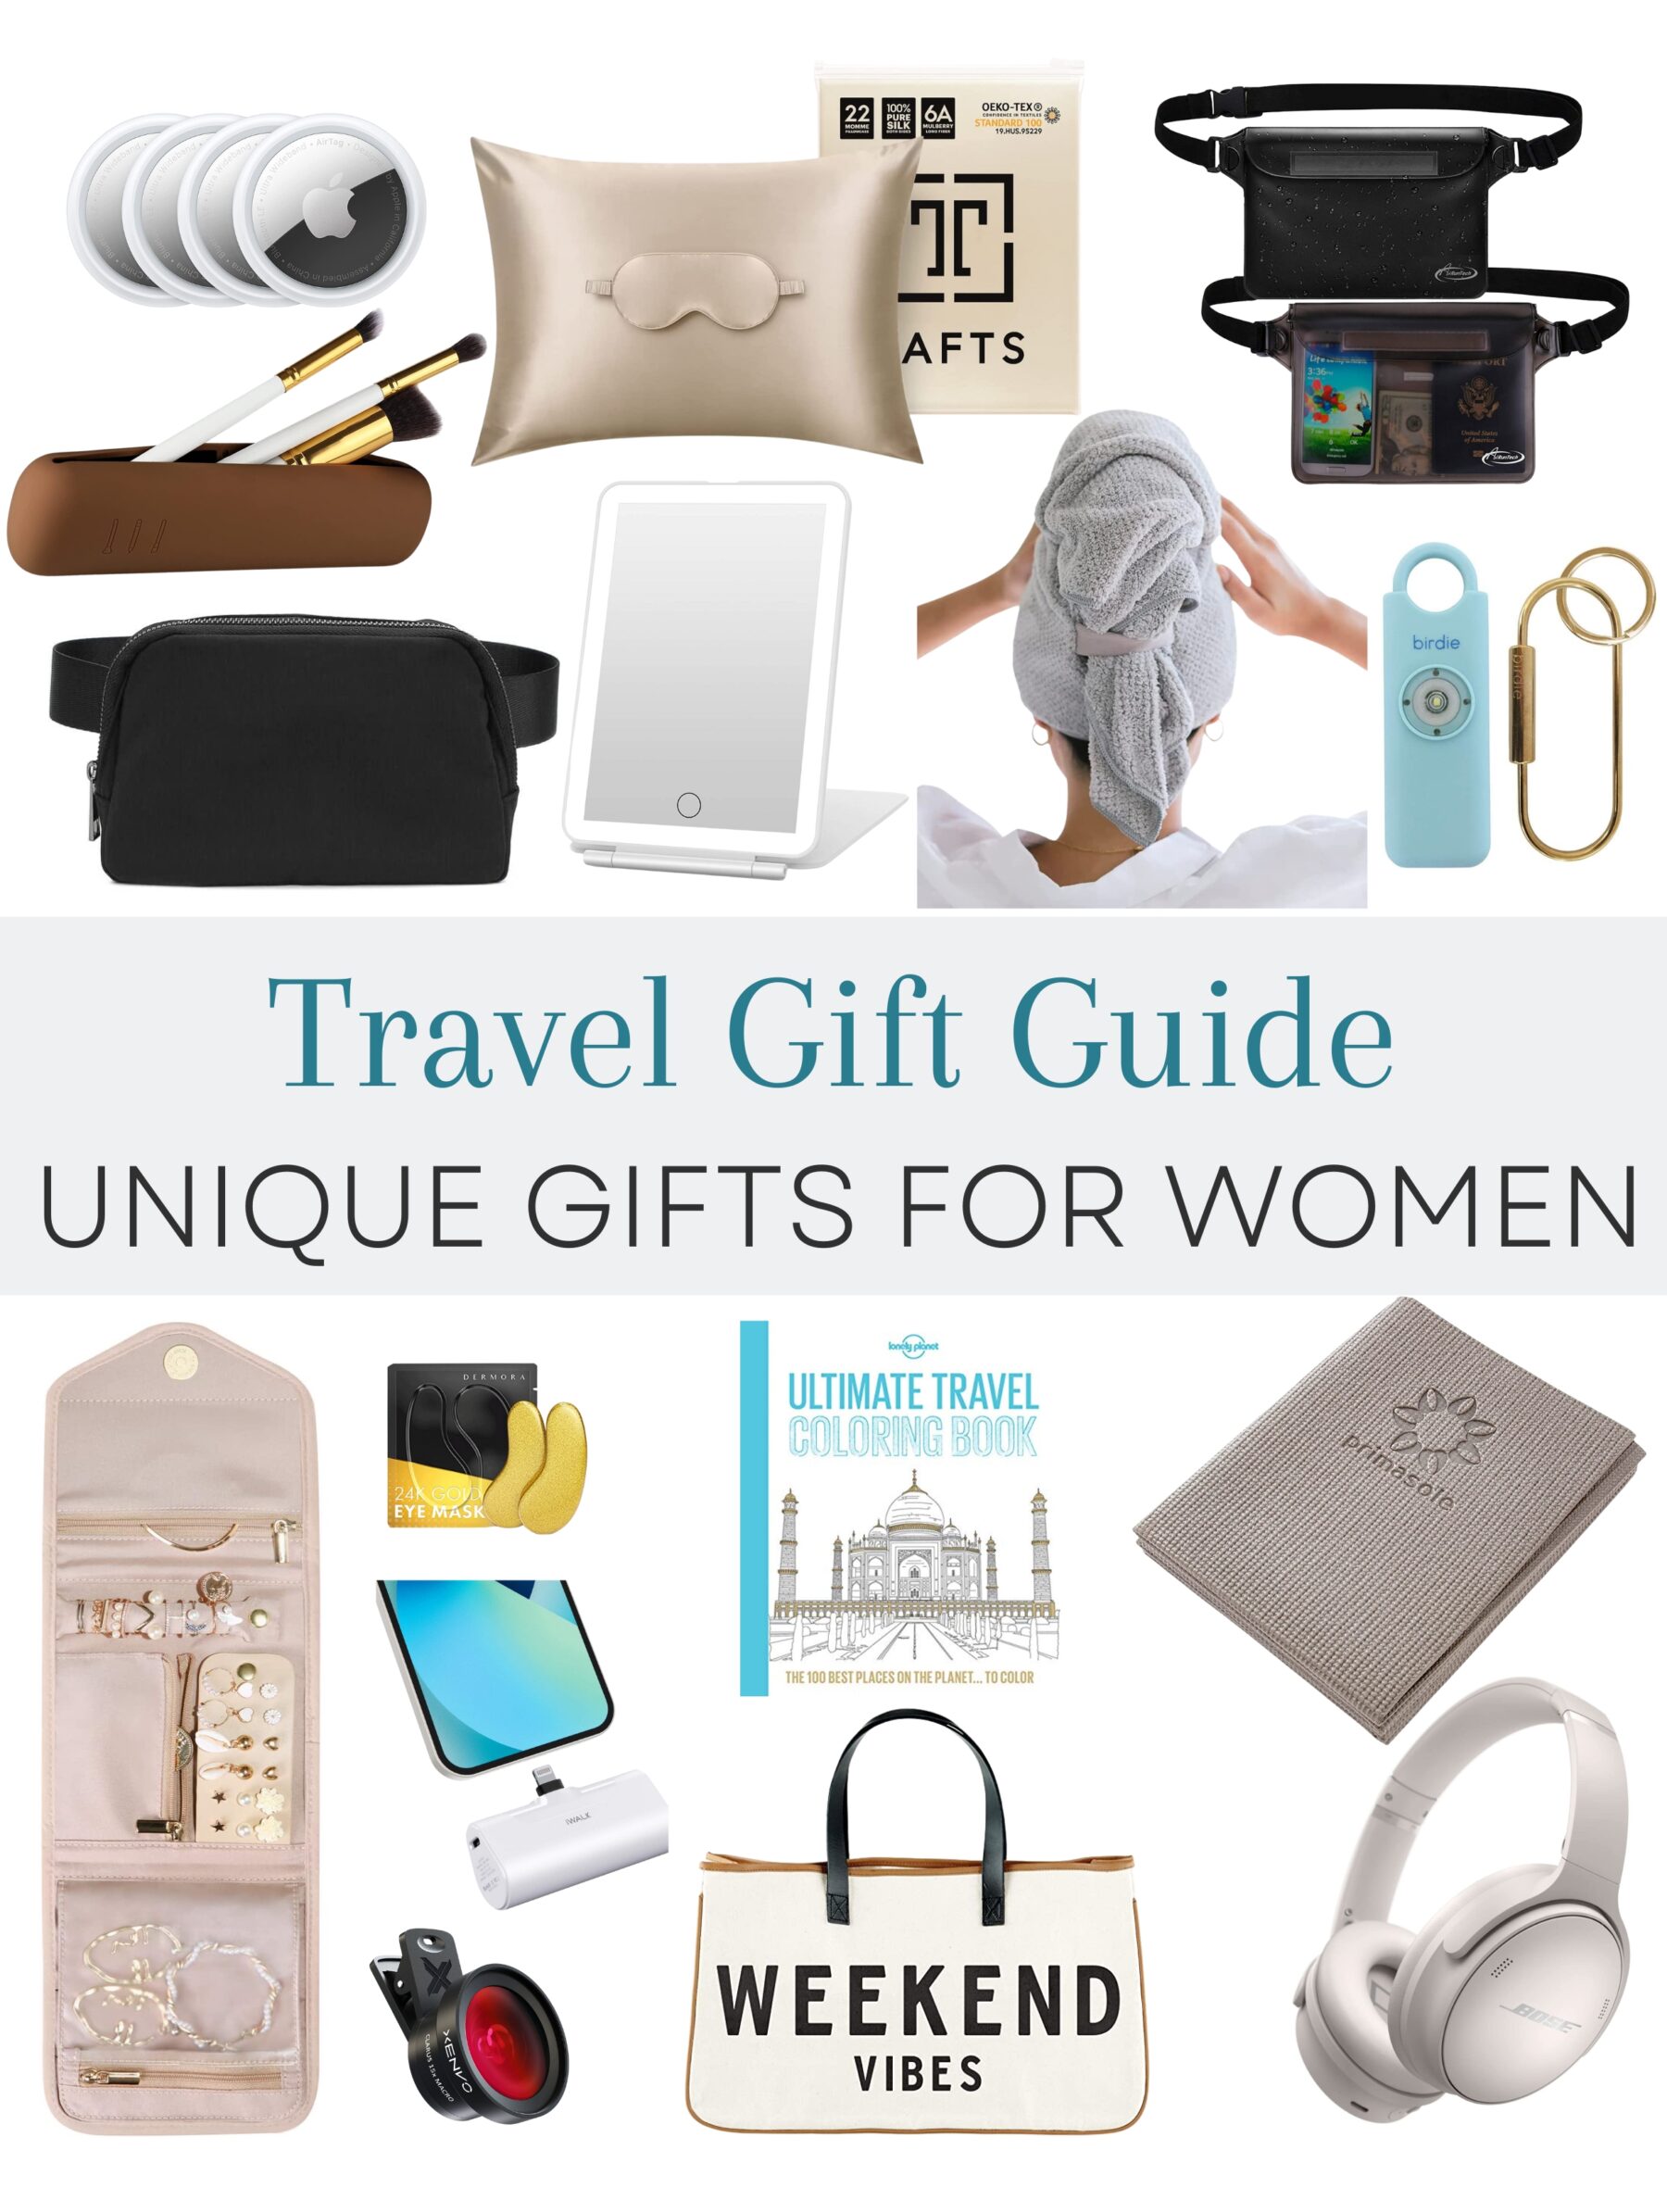 https://thejetlagjourney.com/wp-content/uploads/2022/11/Gift-Guide-for-women-travelers-cover.jpg